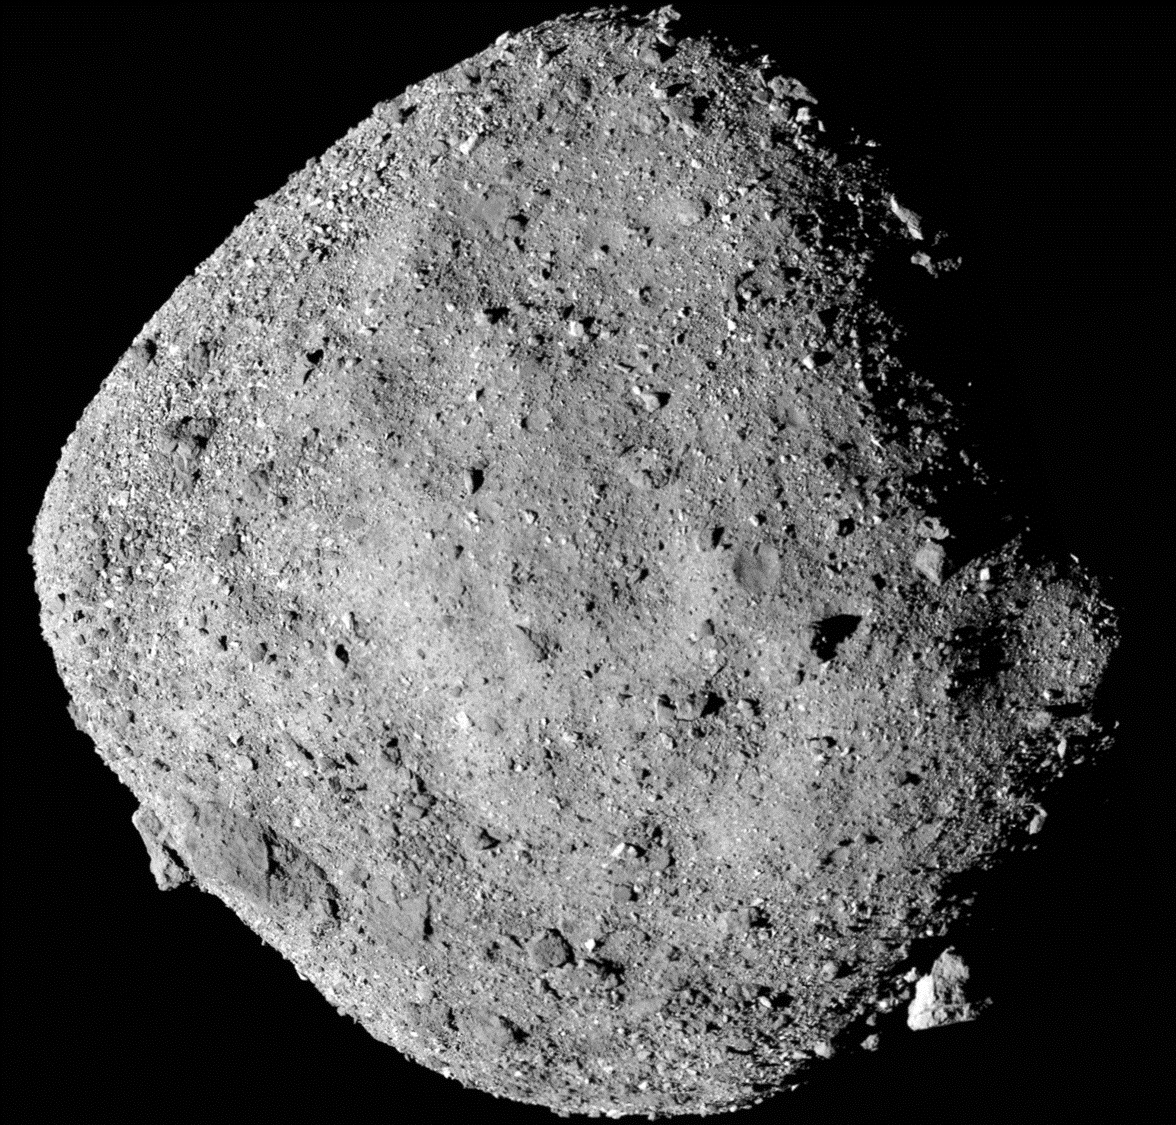 China planteó lanzar 23 cohetes para desviar al asteroide Bennu, que ahora se encuentra a más de 320 millones de kilómetros de la Tierra NASA/Goddard/University of Arizona/Handout via REUTERS